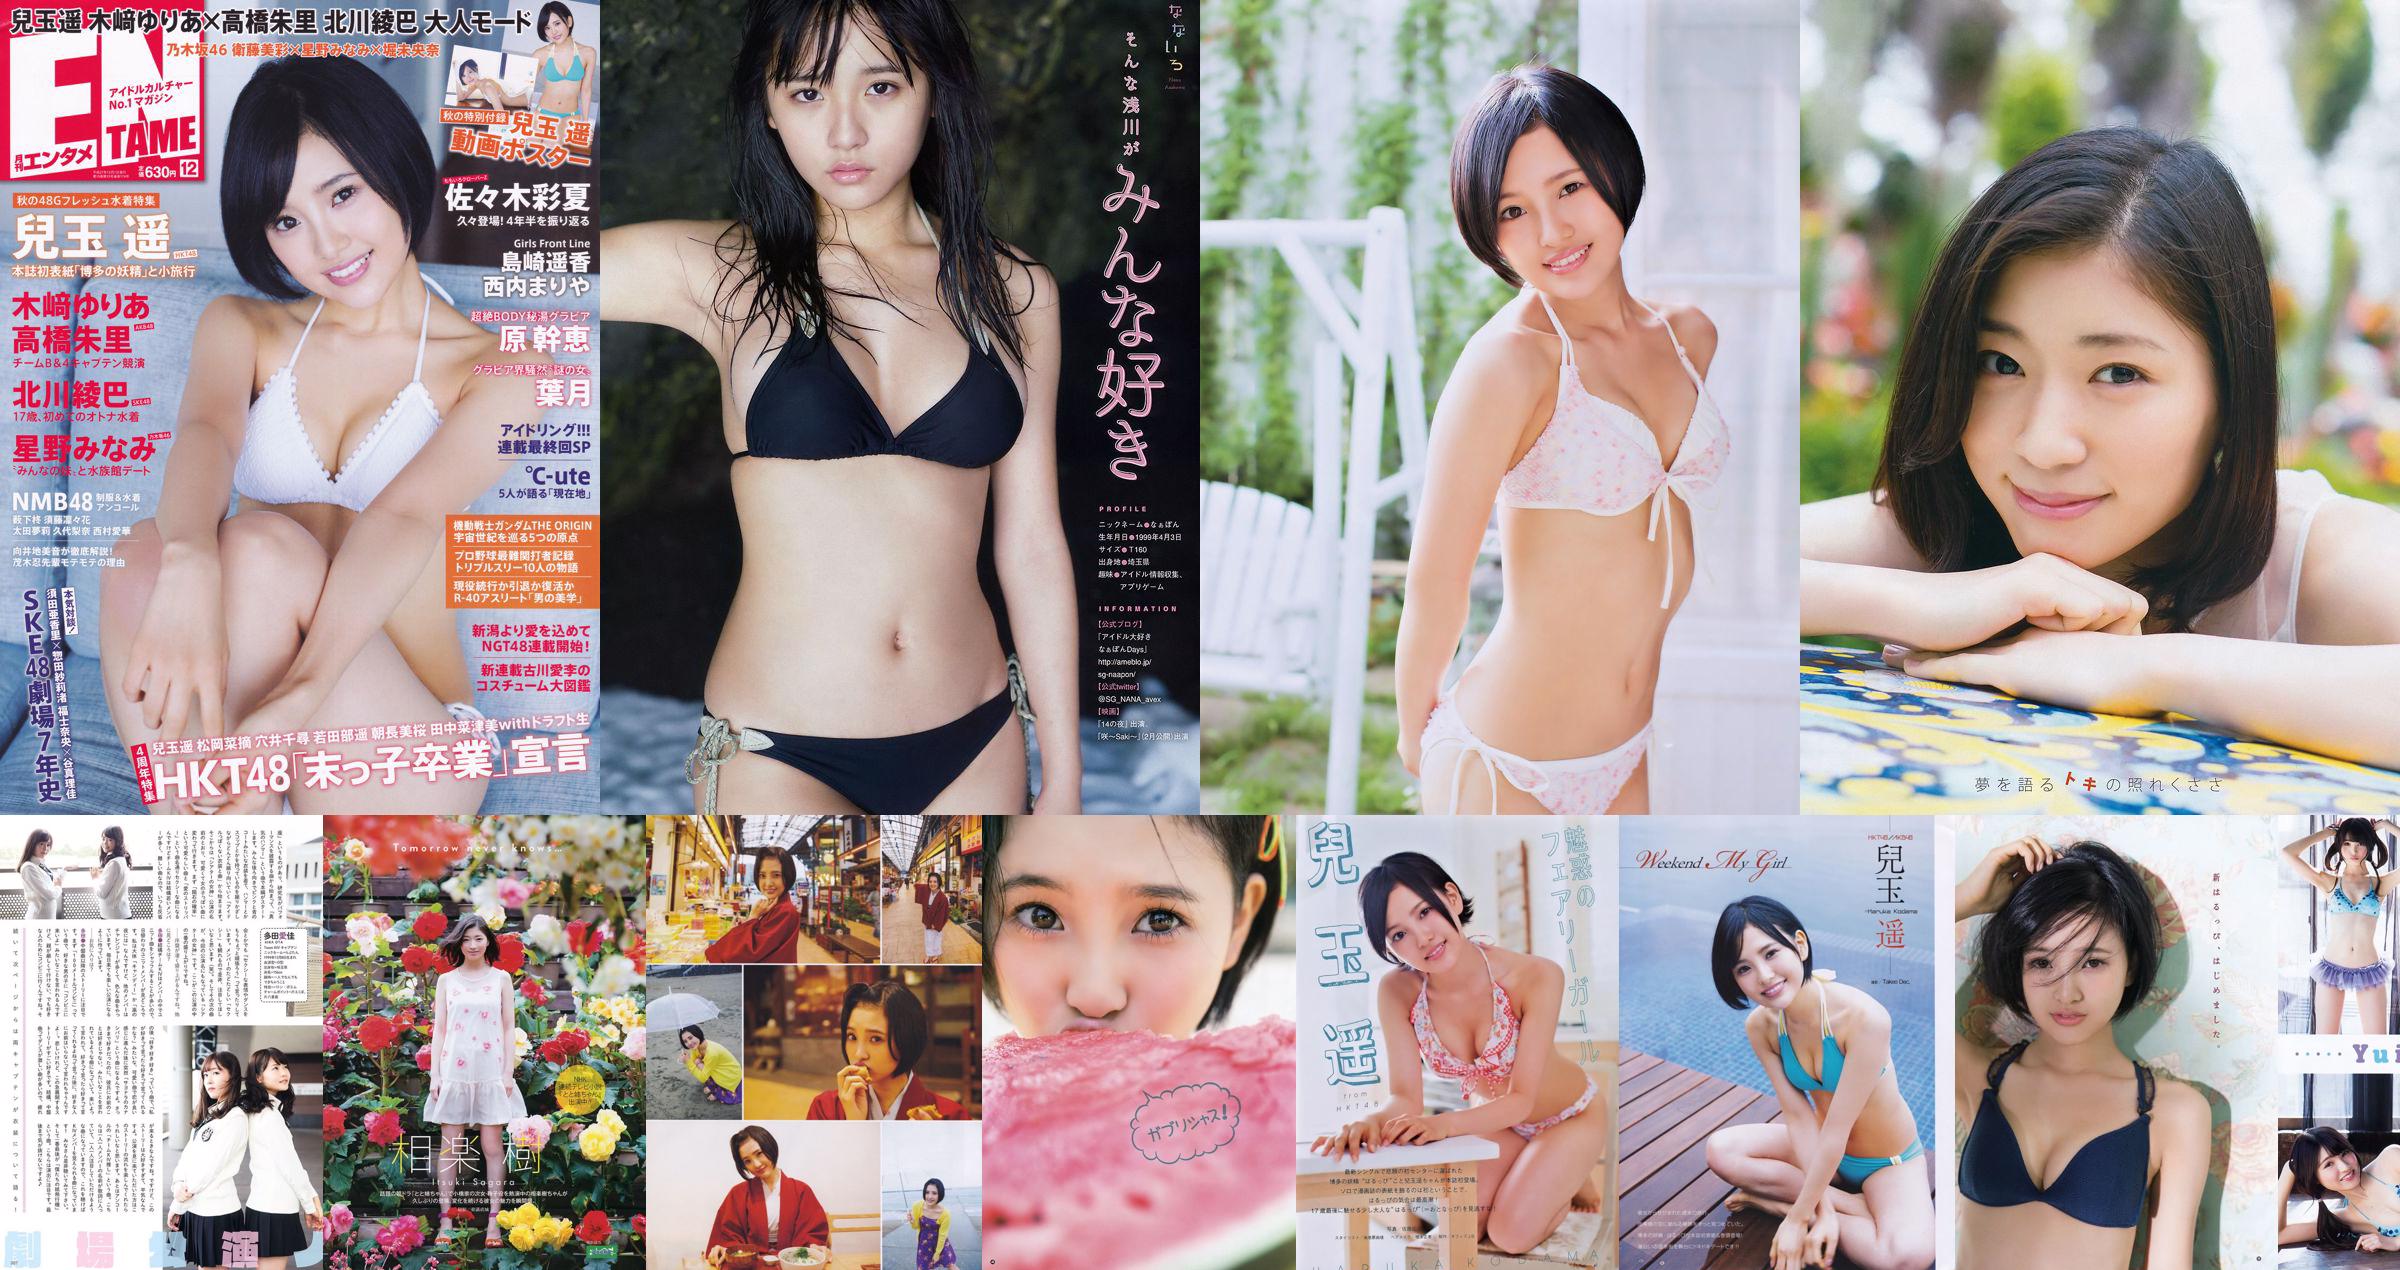 [Young Gangan] Haruka Kodama Rion 2015 No.23 Photo Magazine No.06dcc3 Pagina 6